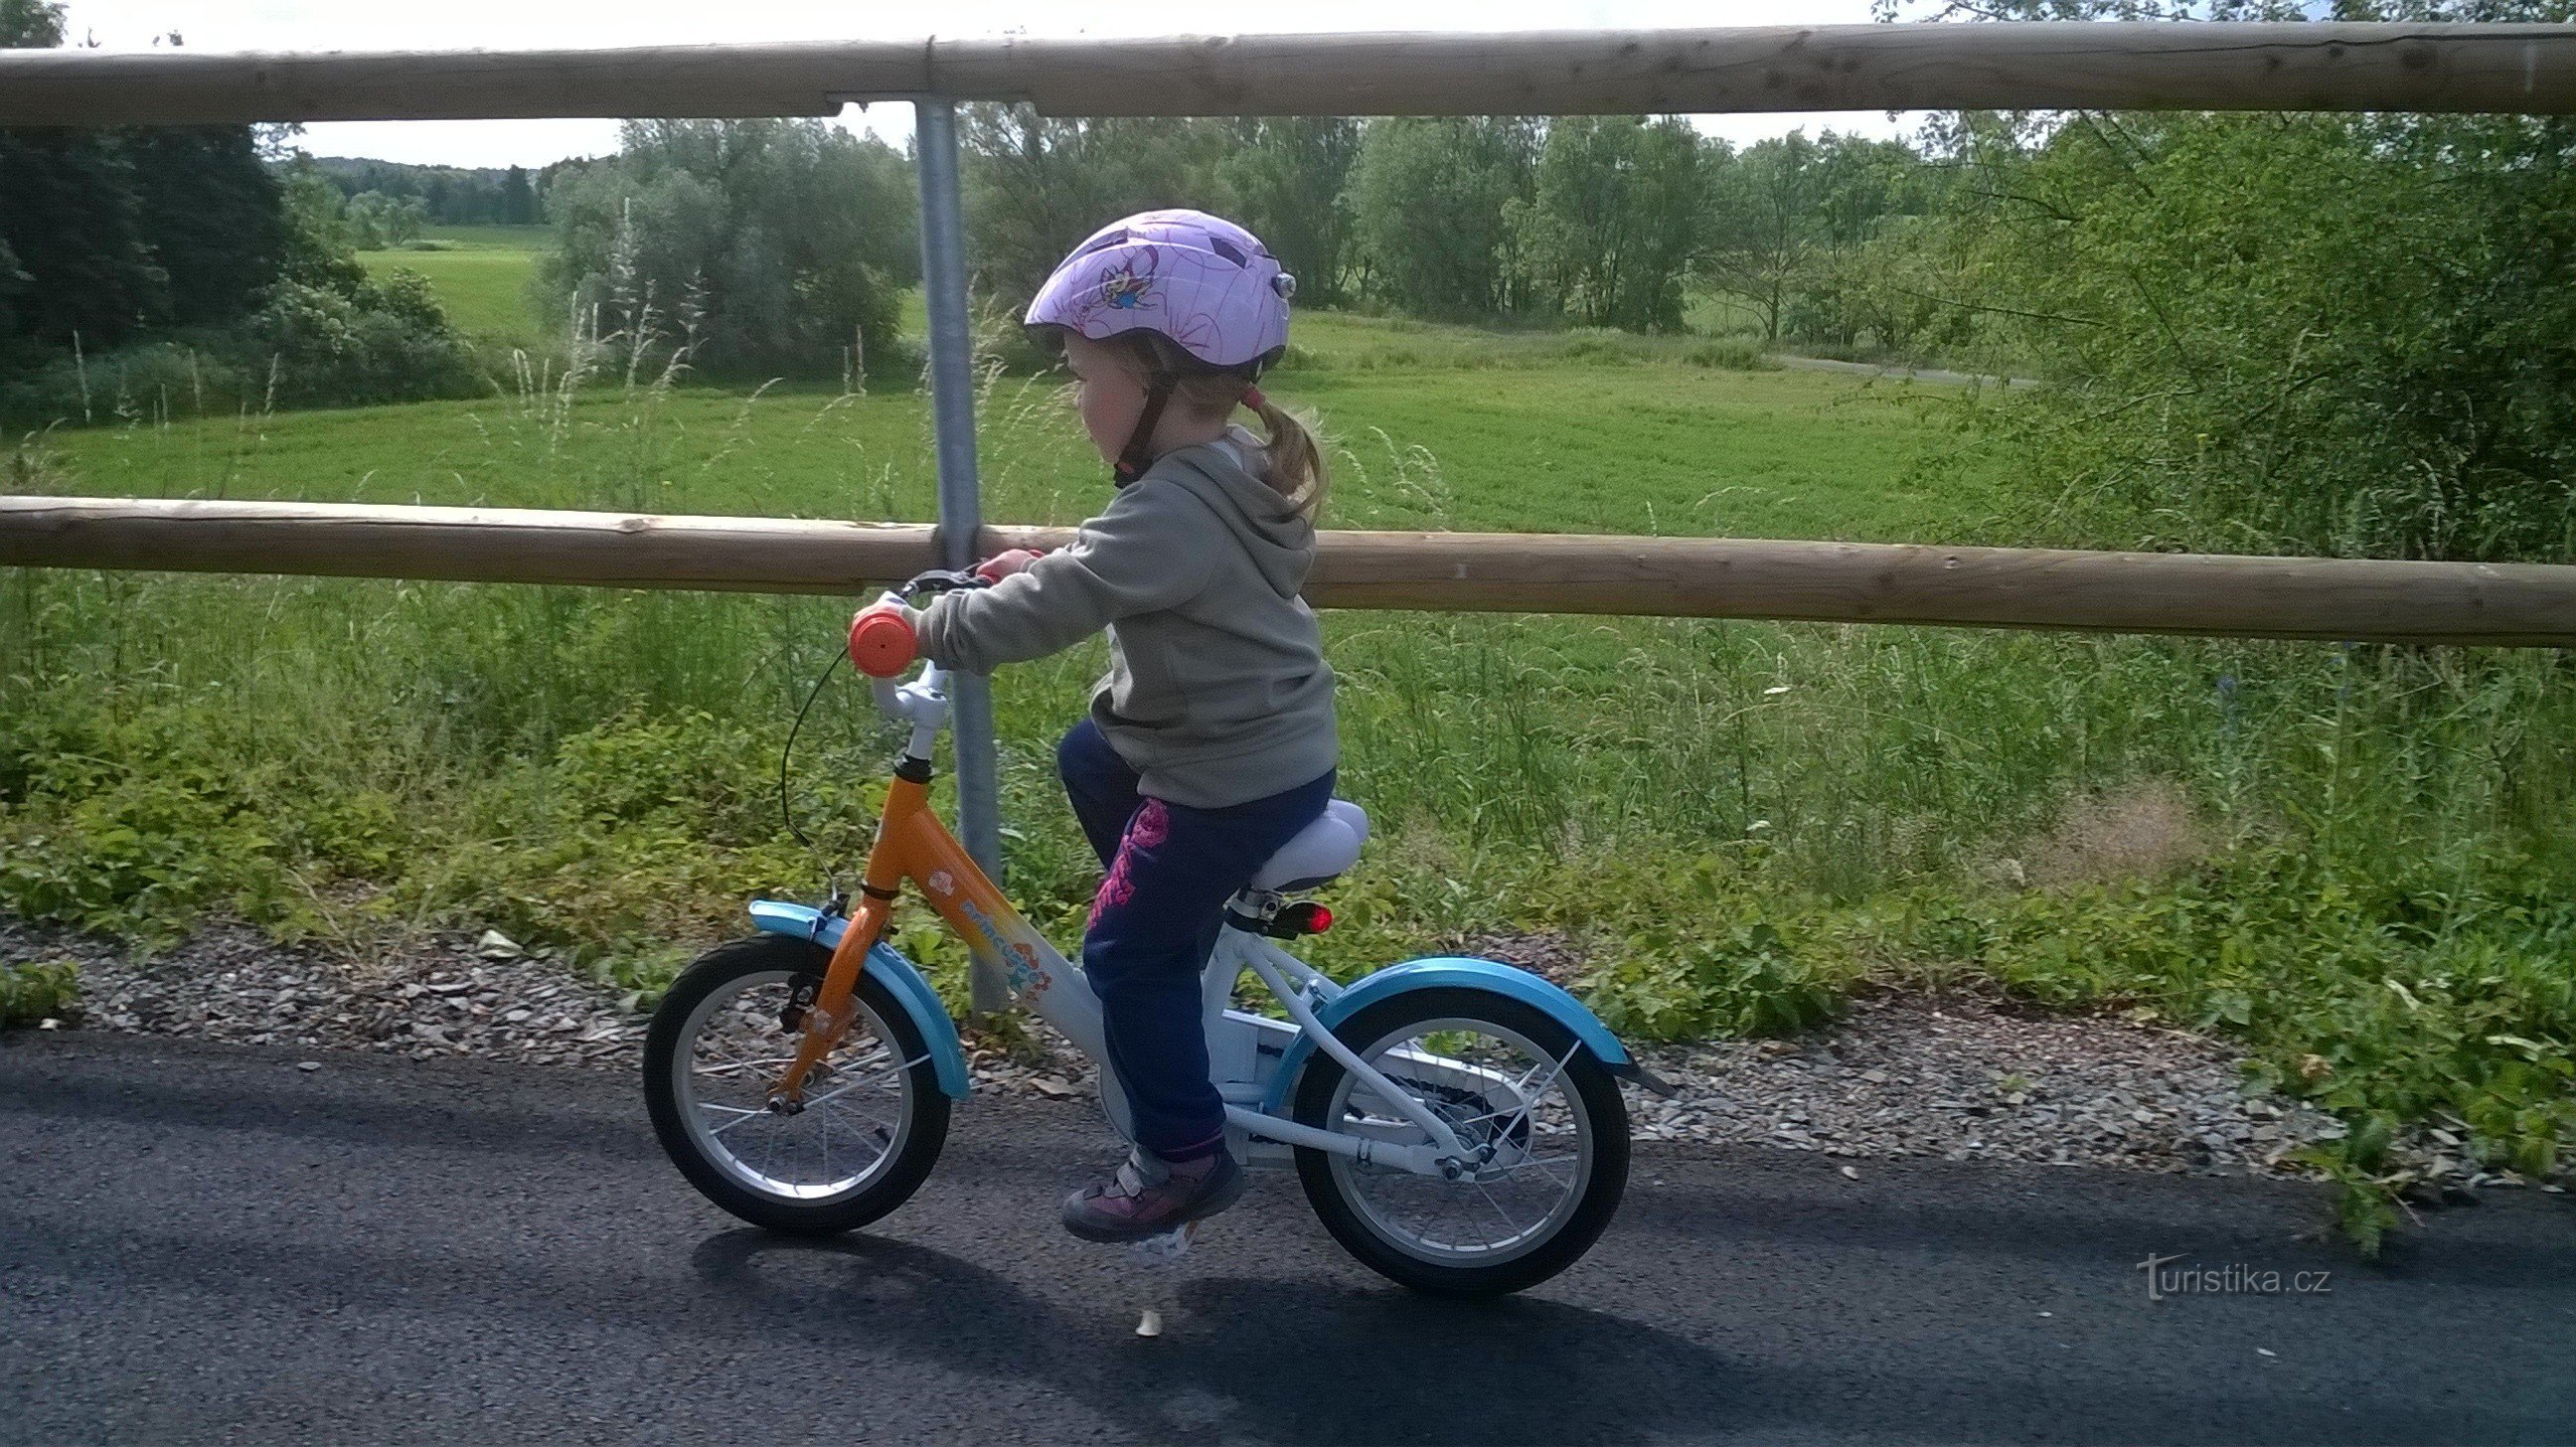 Детям на велосипедах понравится, трасса не сложная для подъема